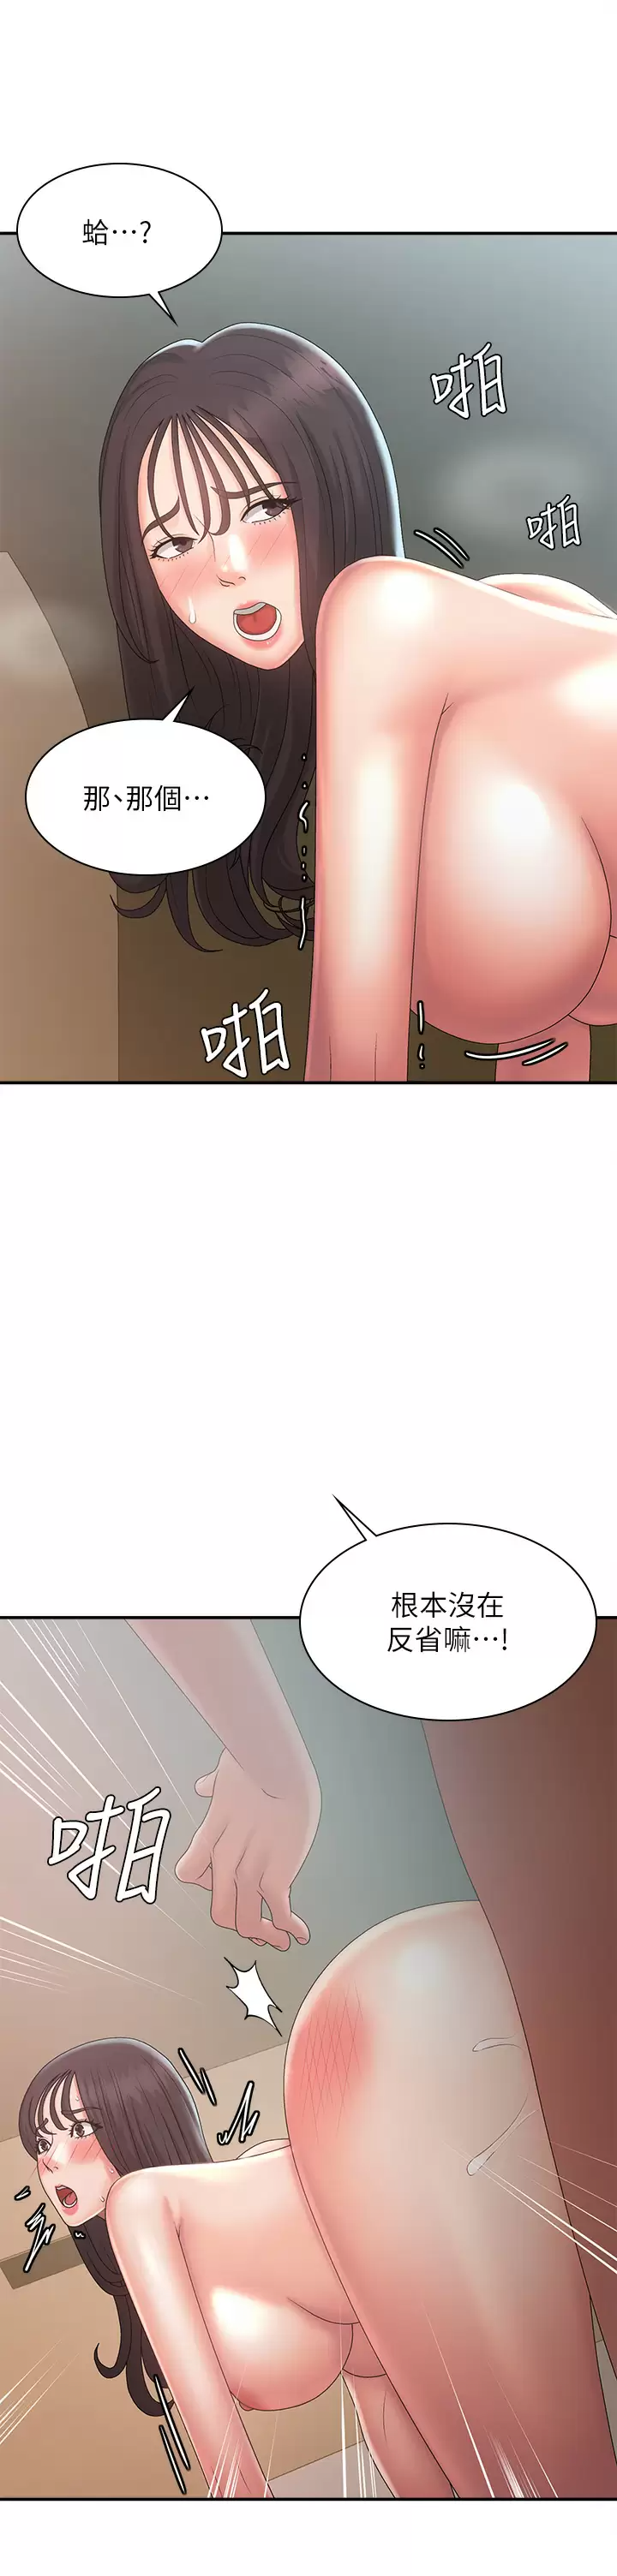 韩国污漫画 青春期小阿姨 第31话 香甜可口的姐妹全餐 15